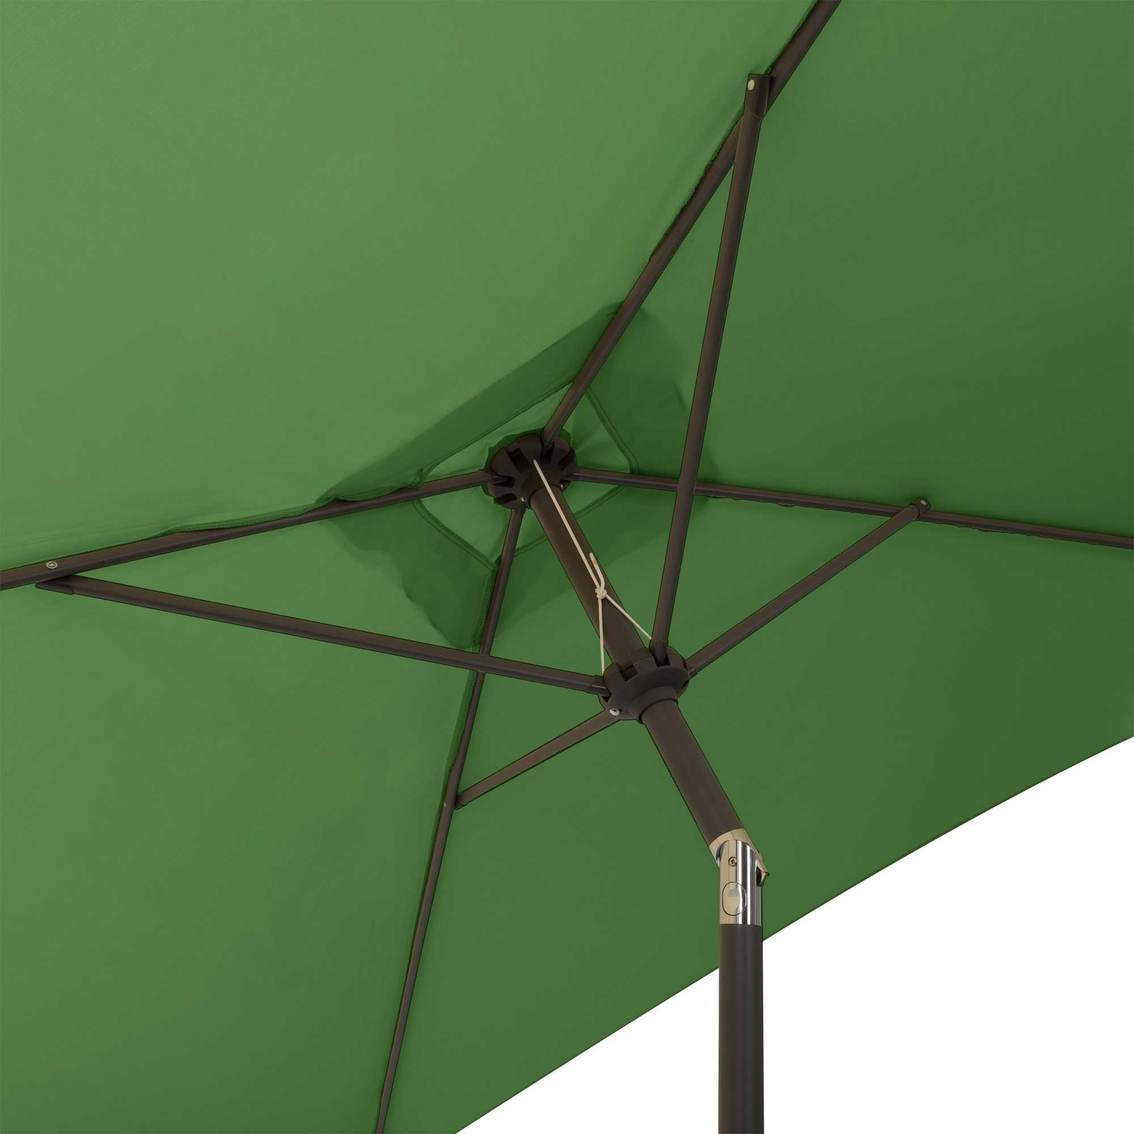 CorLiving 9 ft. Square Tilting Patio Umbrella - Image 4 of 8